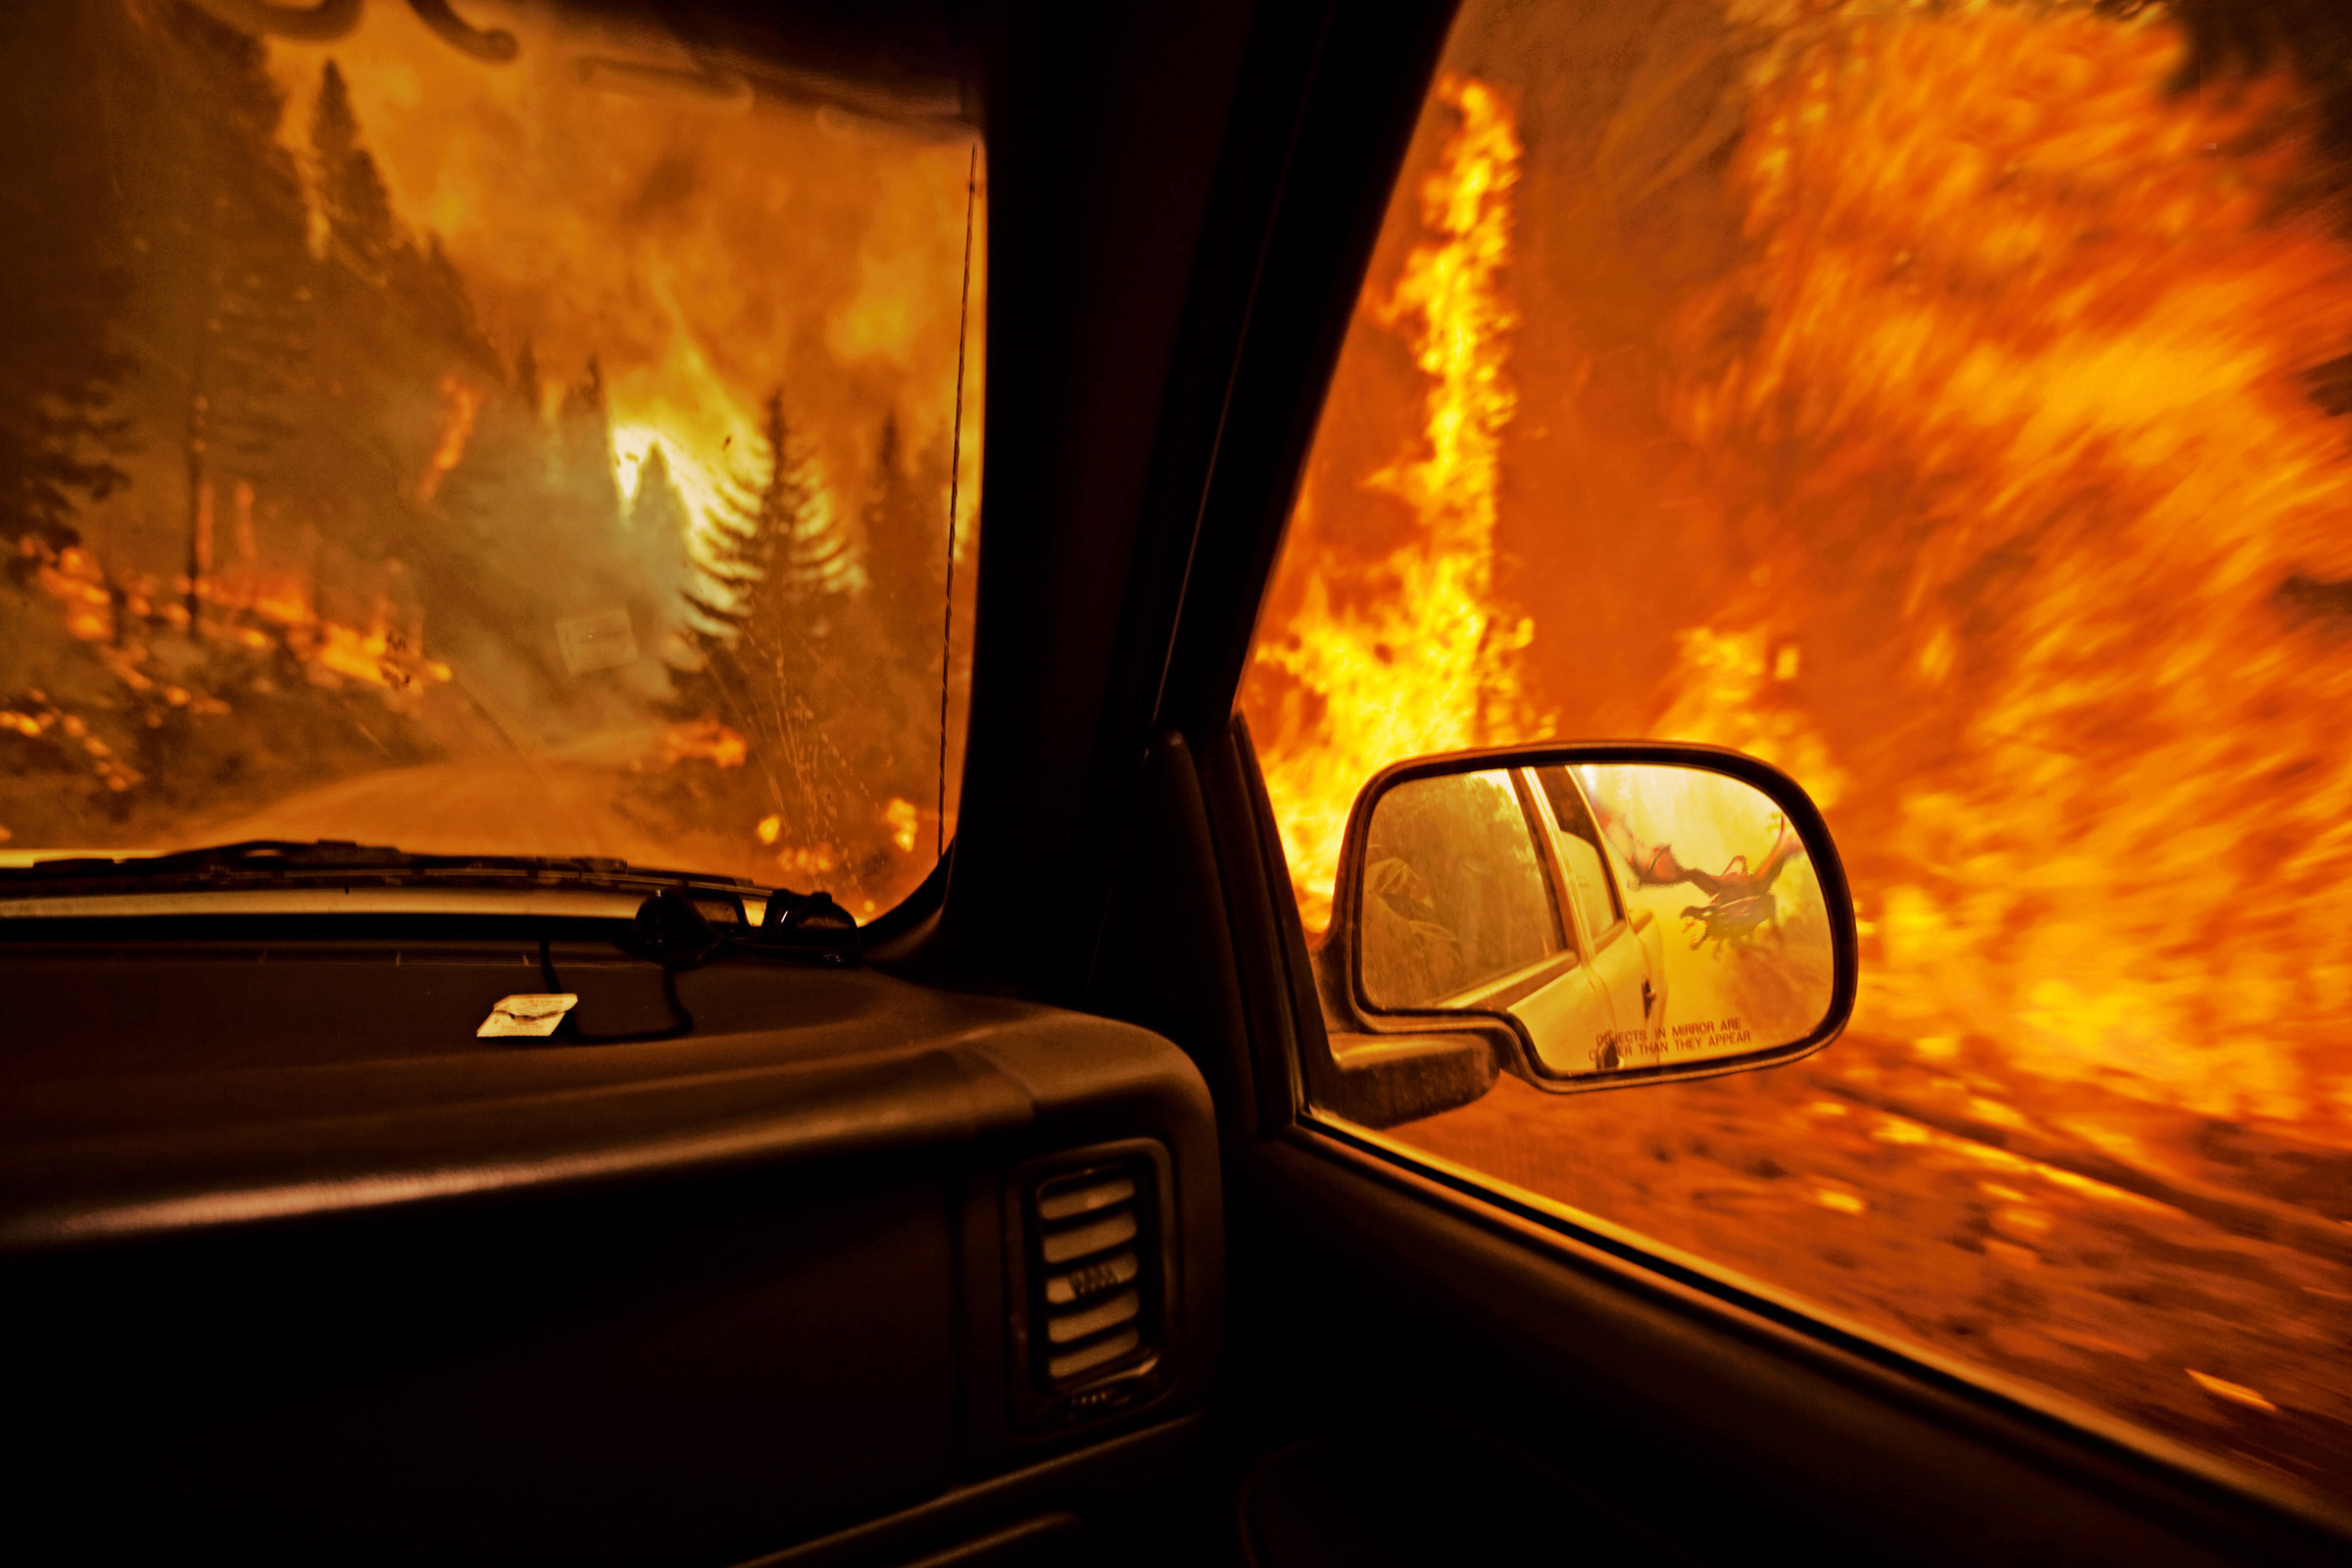 fire, side car mirror - desktop wallpaper